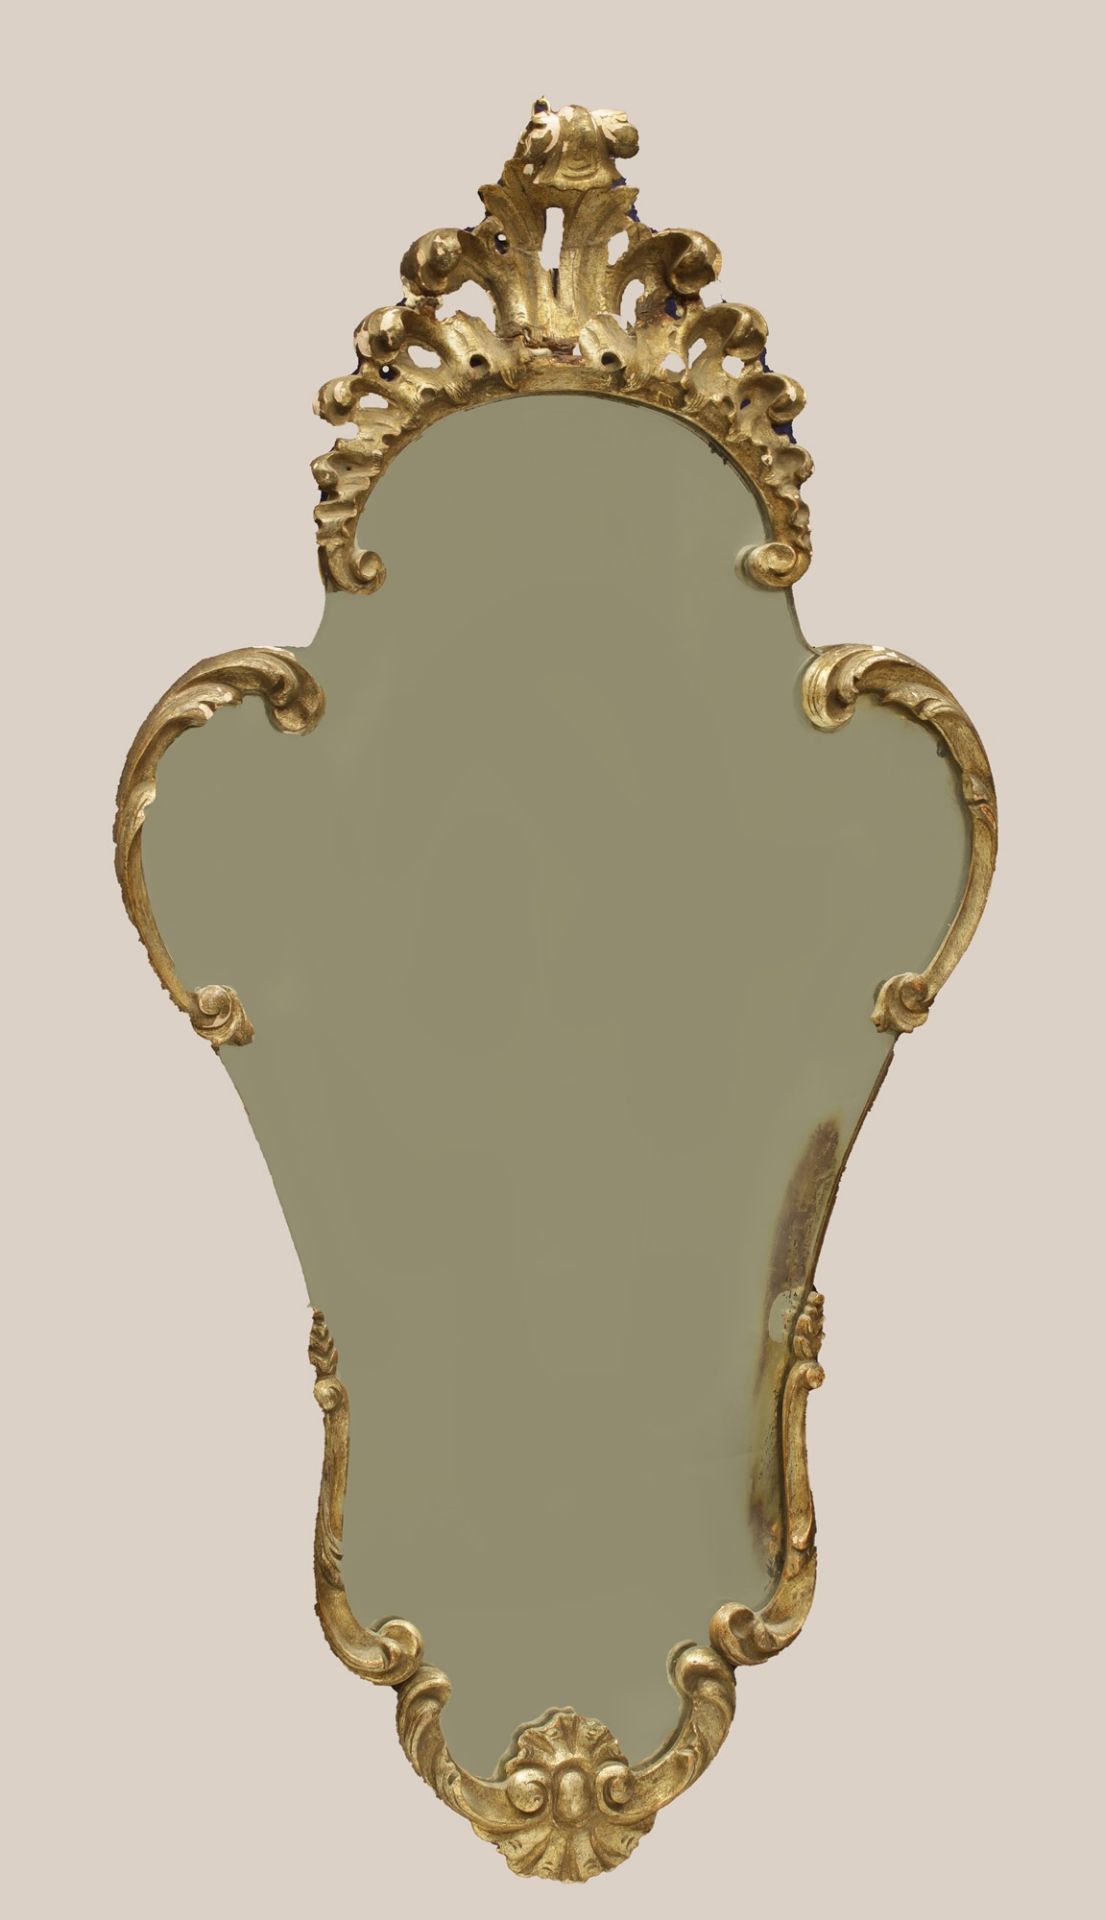 Specchiera veneziana della prima metà del XX secolo, composta da elementi in legno finemente sagomat